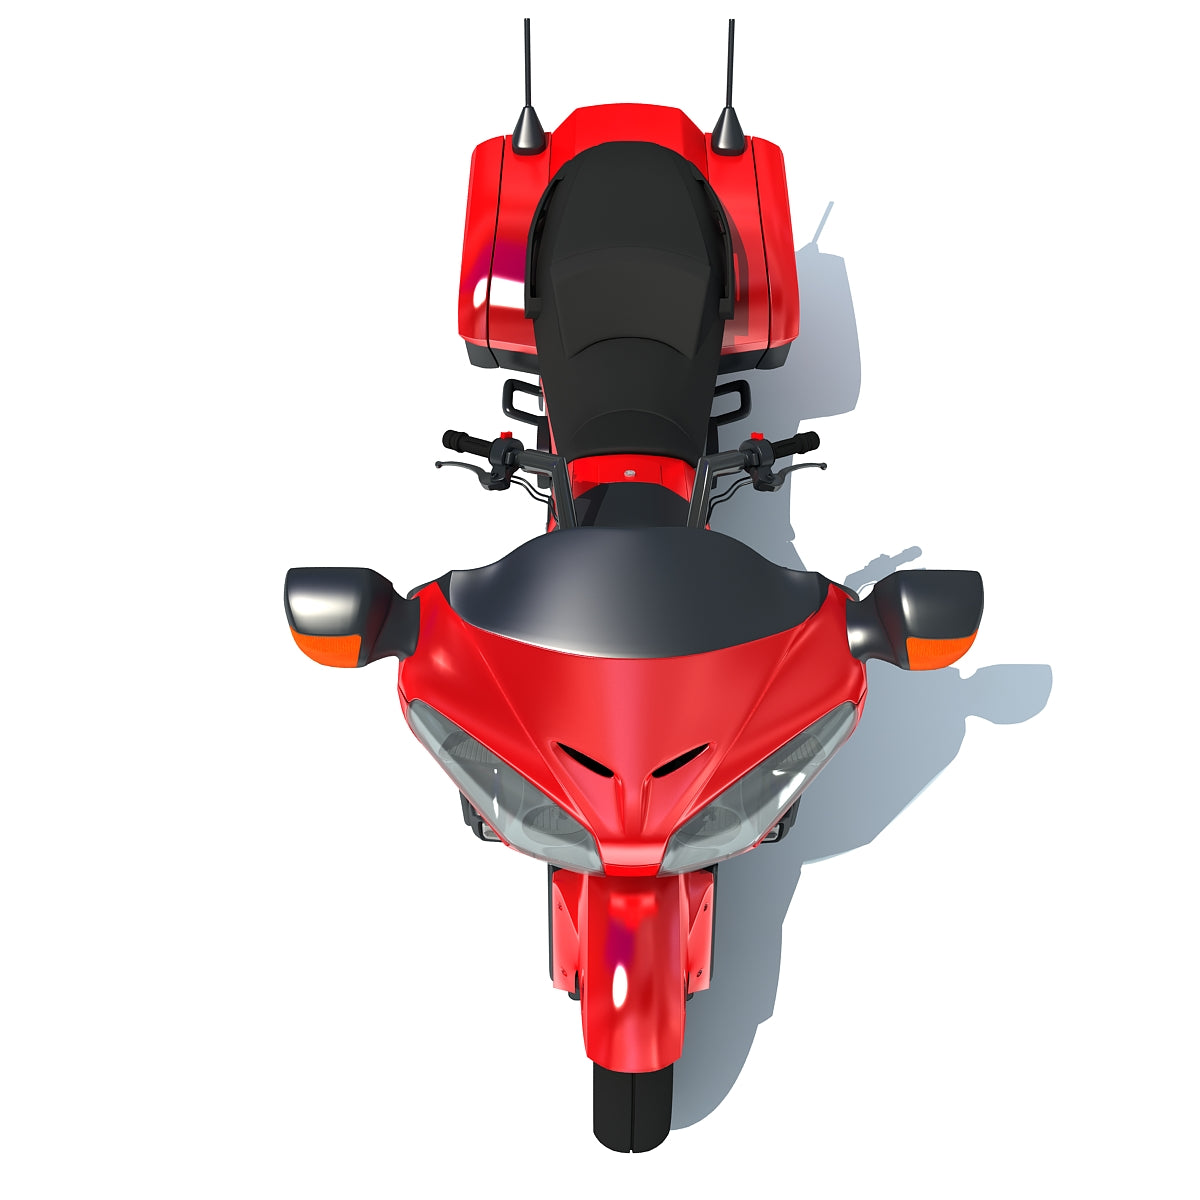 3D Motorcycles Models